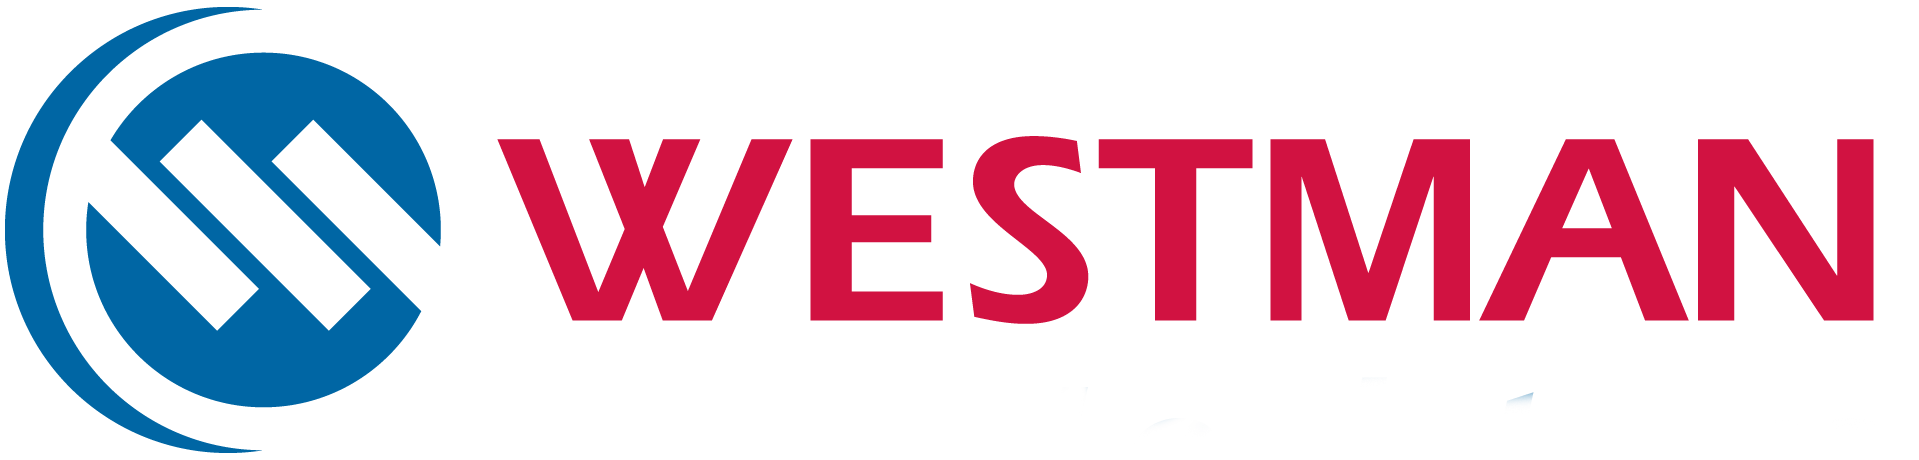 Westman logo